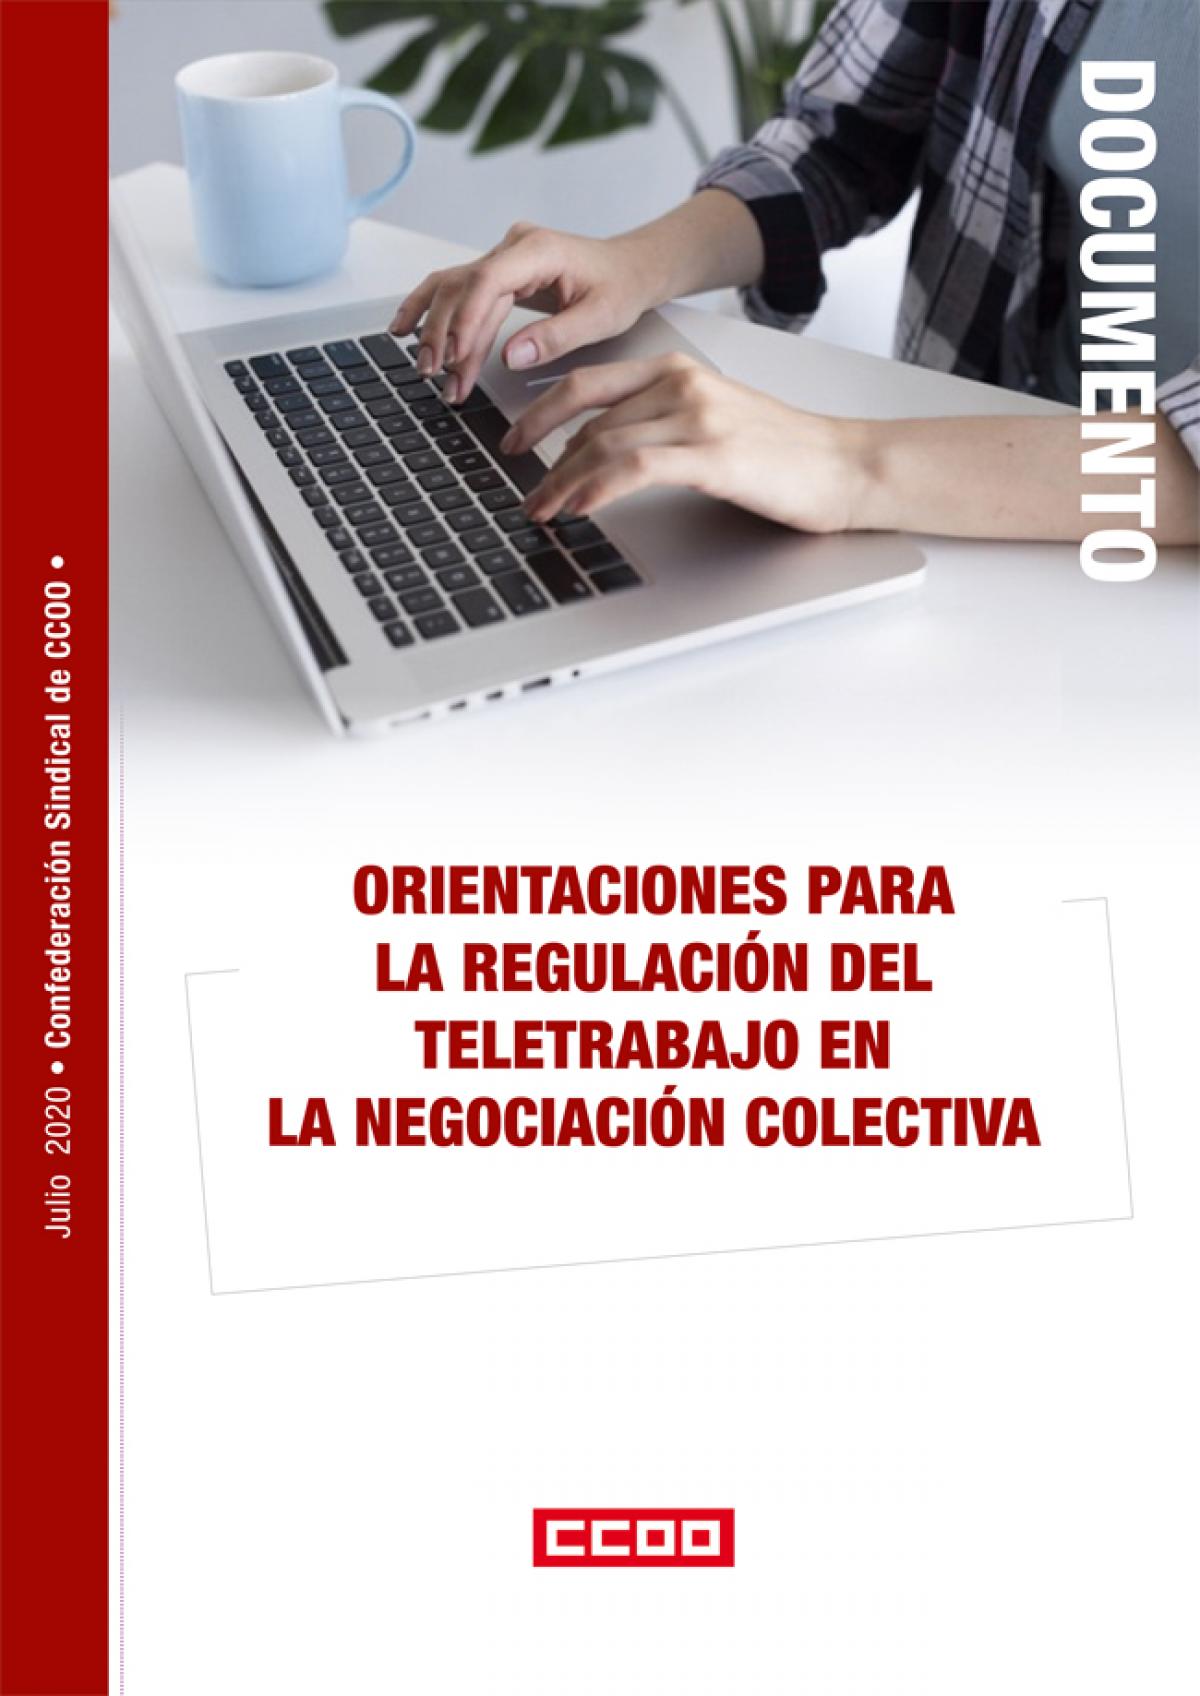 Orientaciones para la regulación del teletrabajo en la Negociación Colectiva